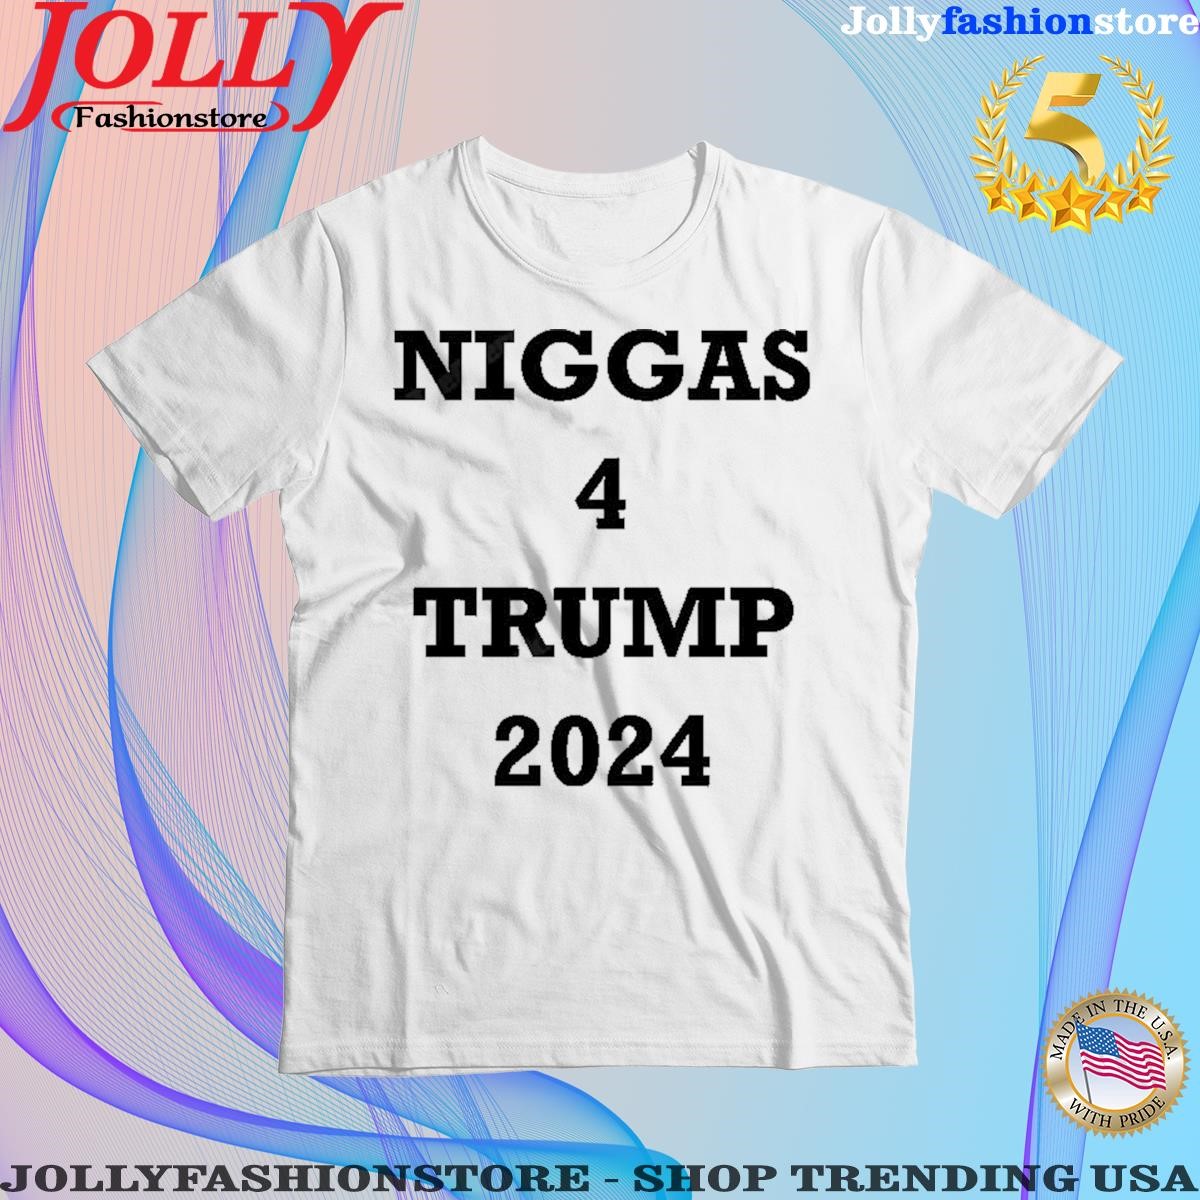 Trending georgia Man Wearing Niggas 4 Trump 2024 T Shirt